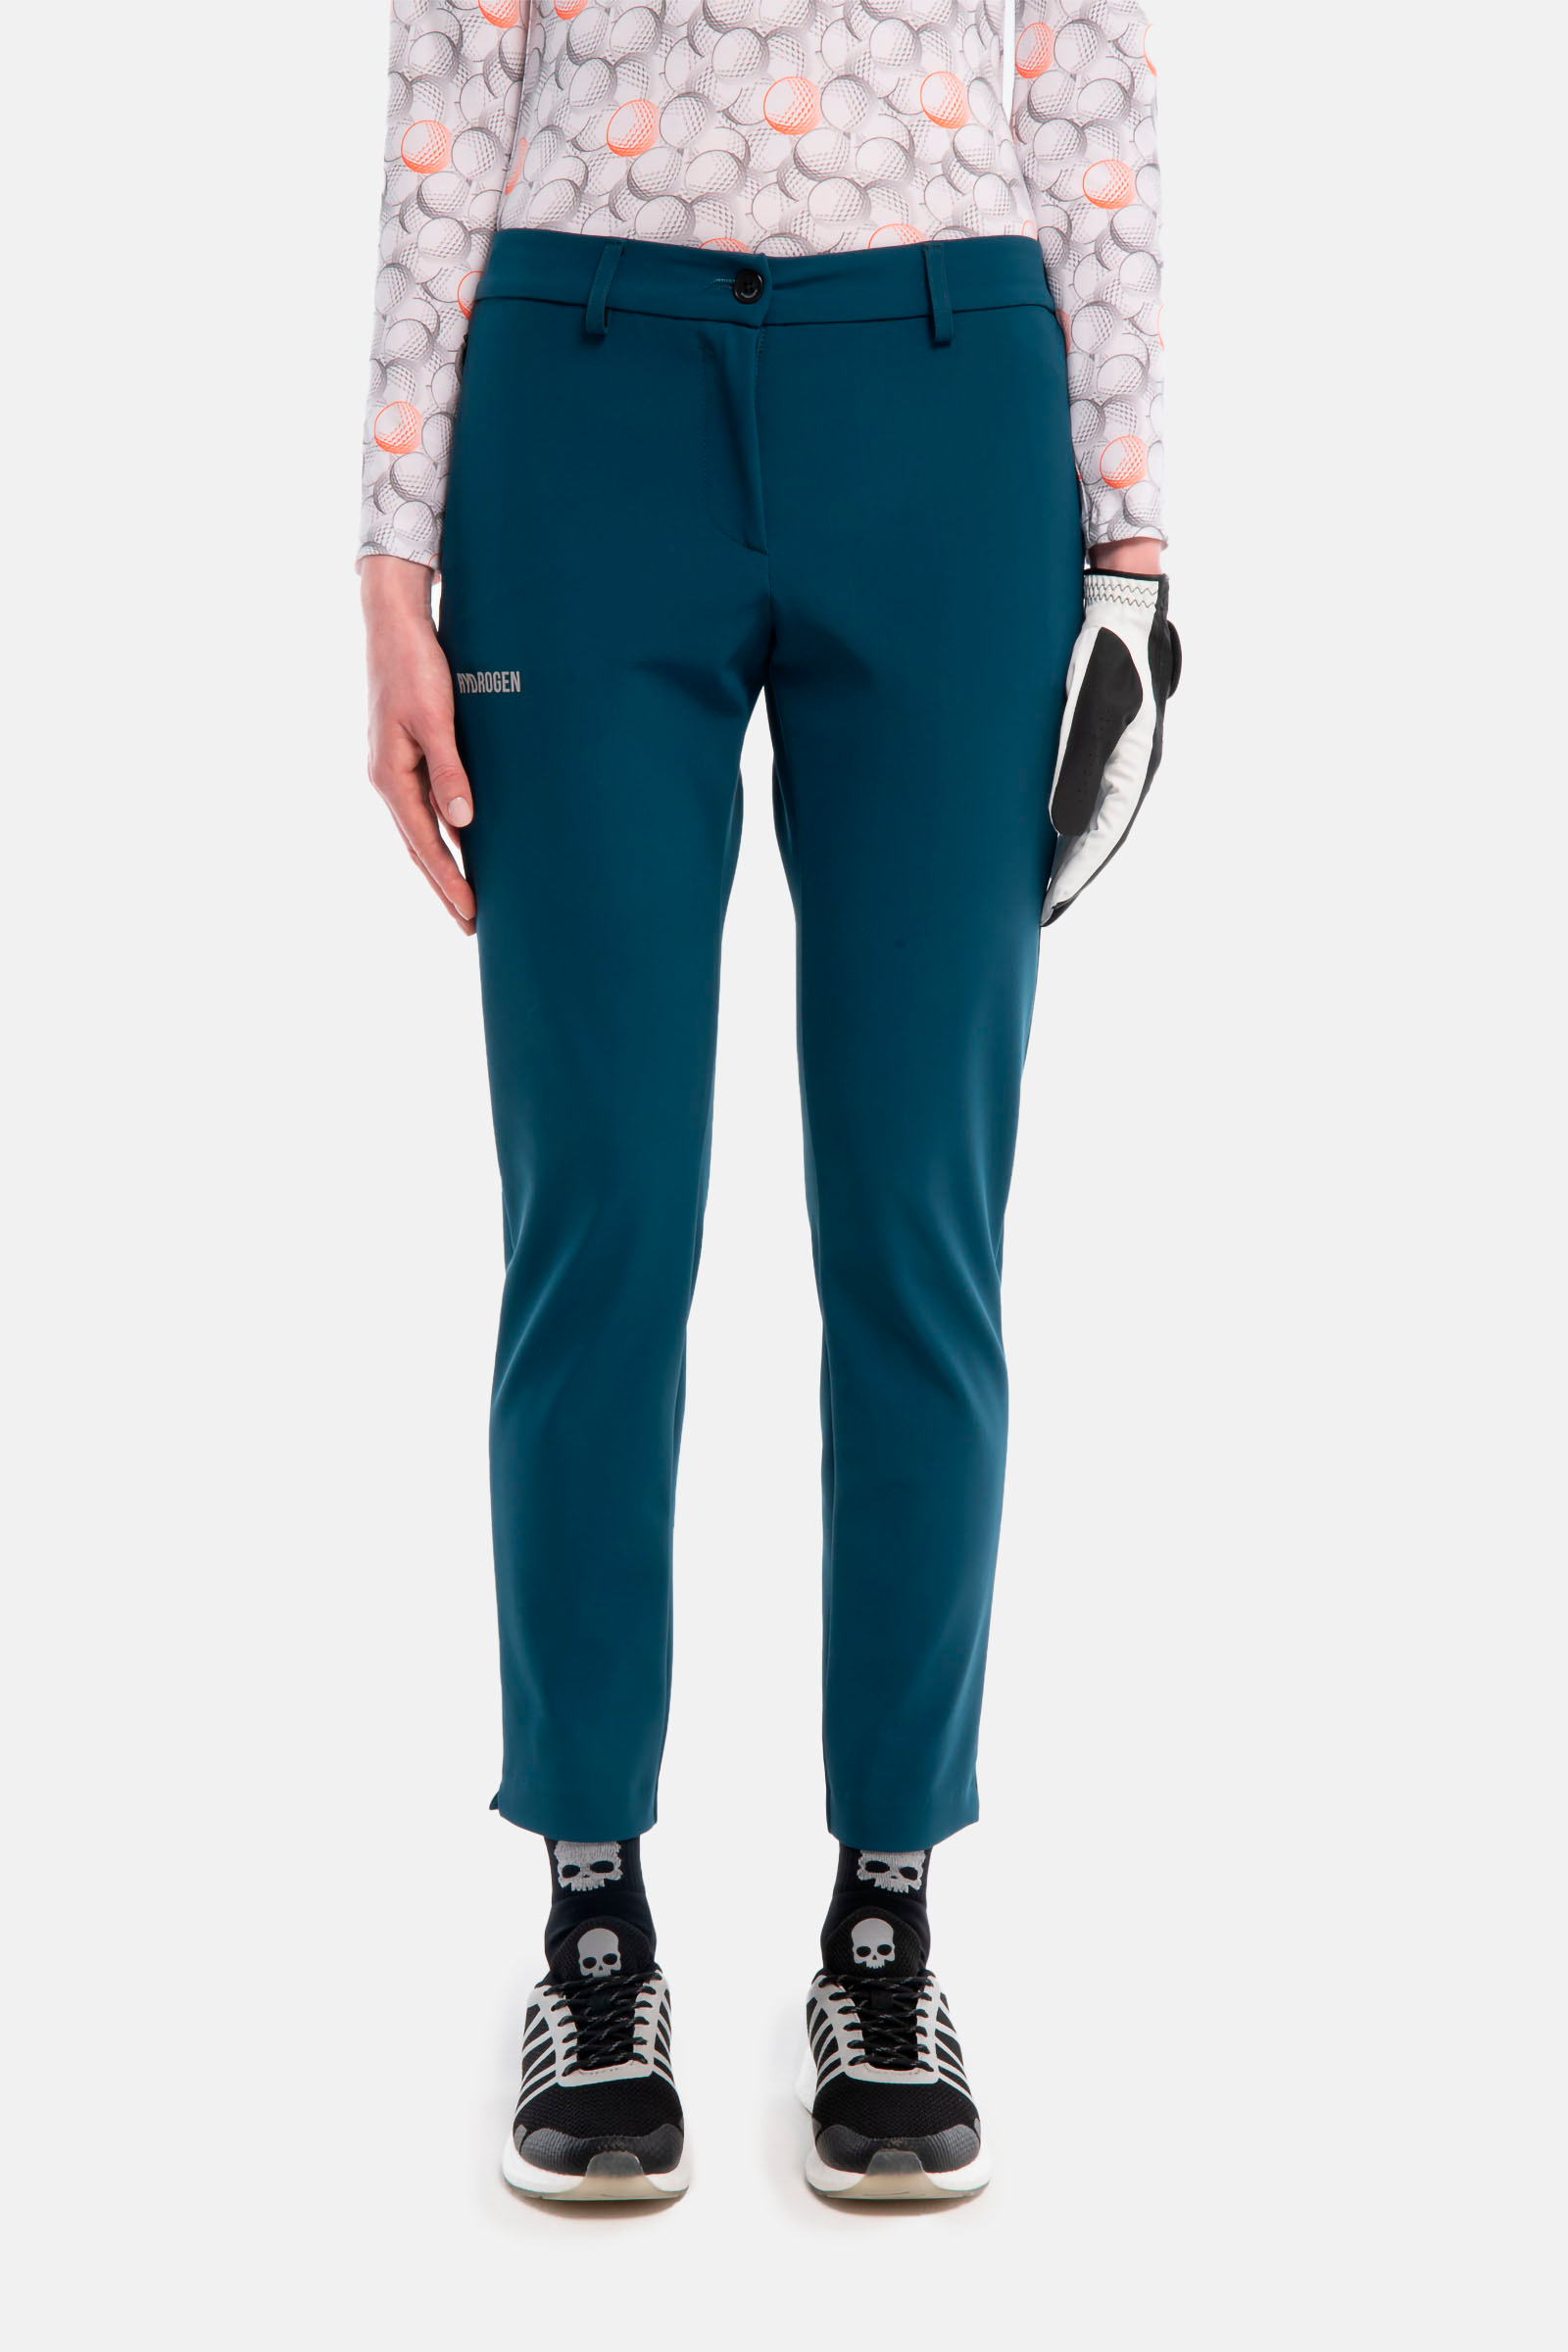 H2 TECH PANTS - BLUE,ORANGE - Hydrogen - Luxury Sportwear